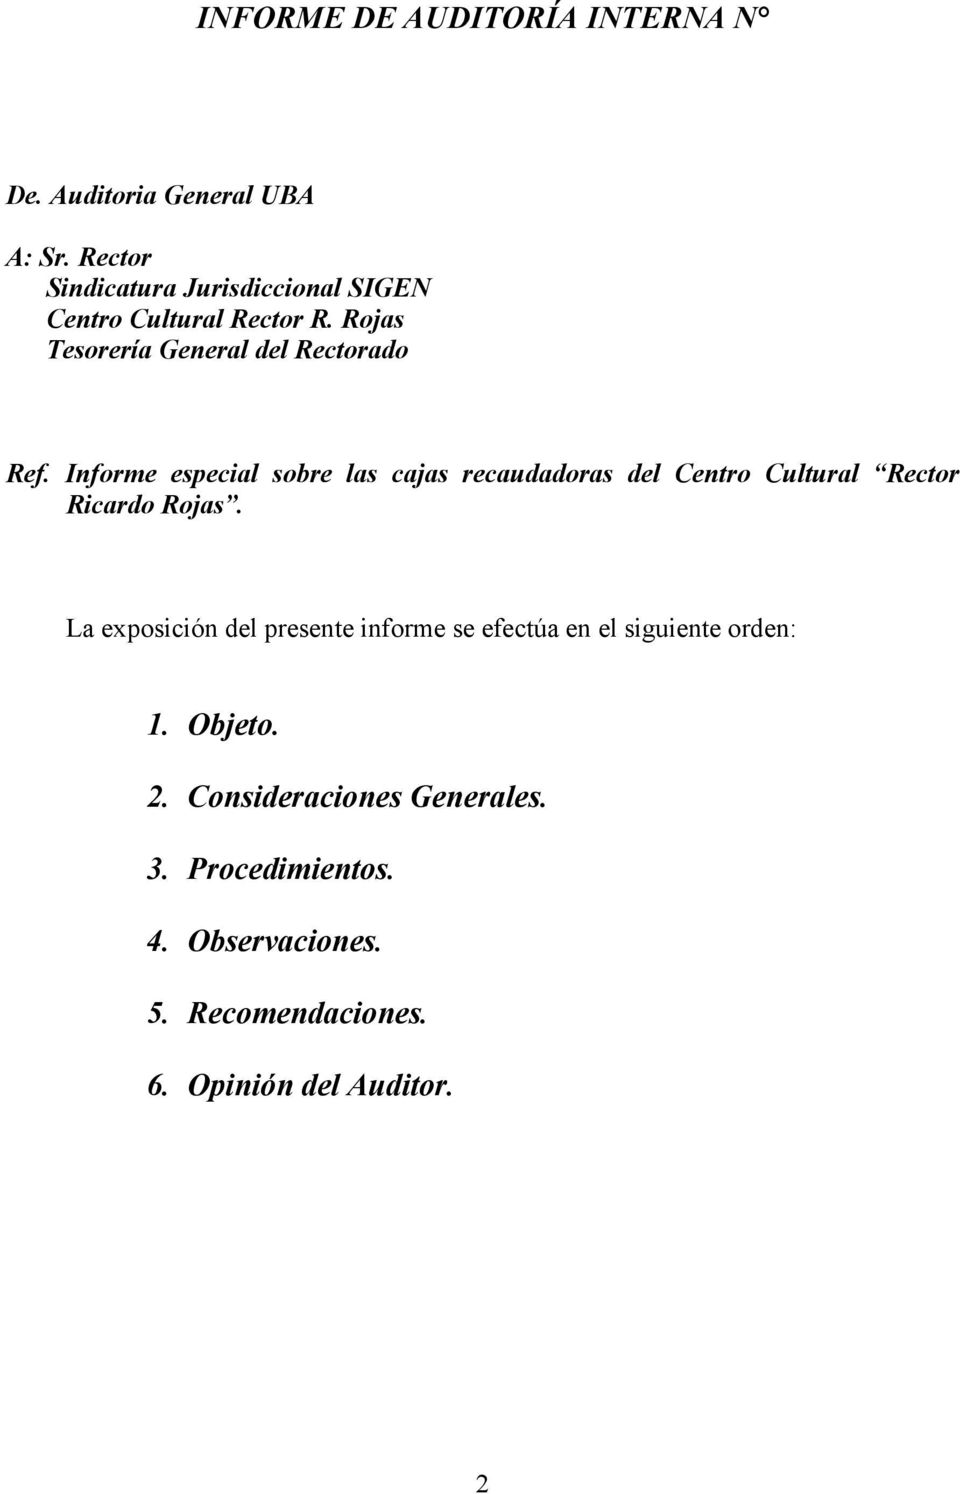 Informe especial sobre las cajas recaudadoras del Centro Cultural Rector Ricardo Rojas.